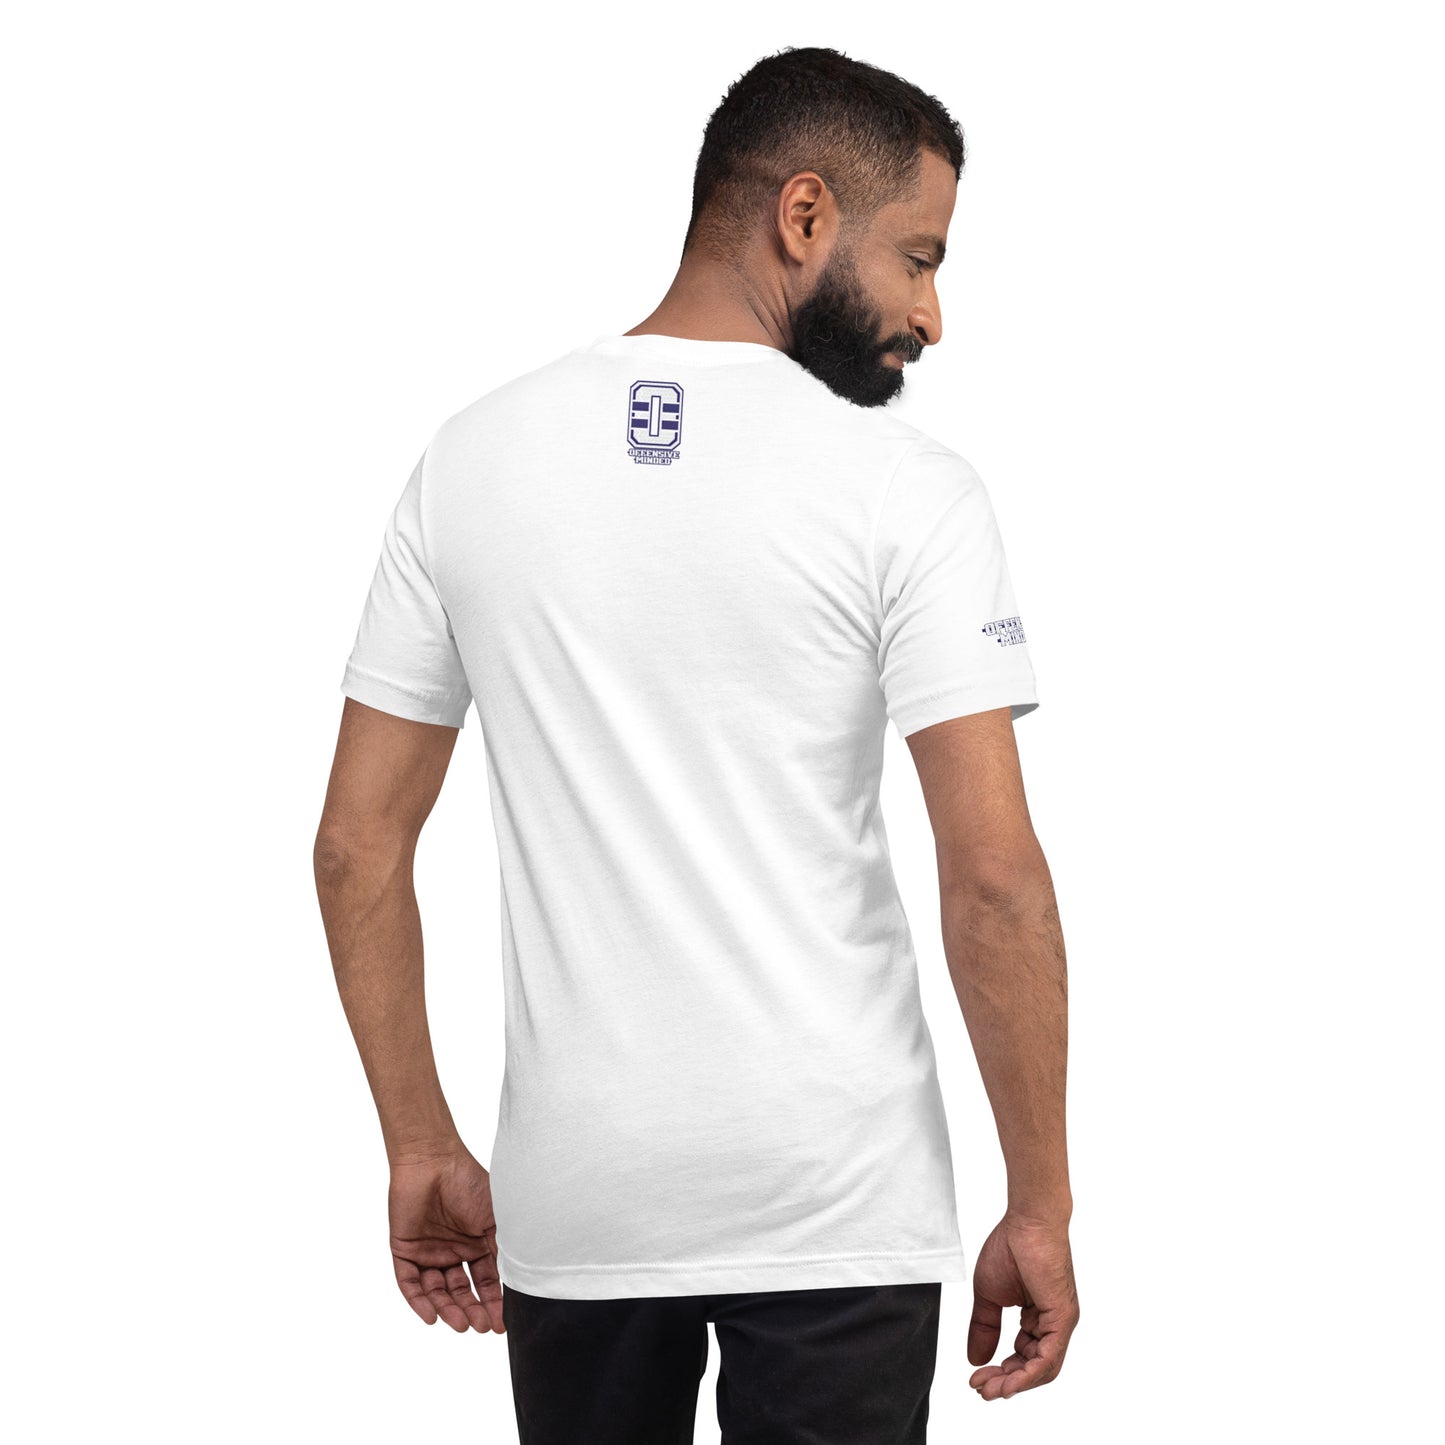 Big Papi Stache White Unisex t-shirt